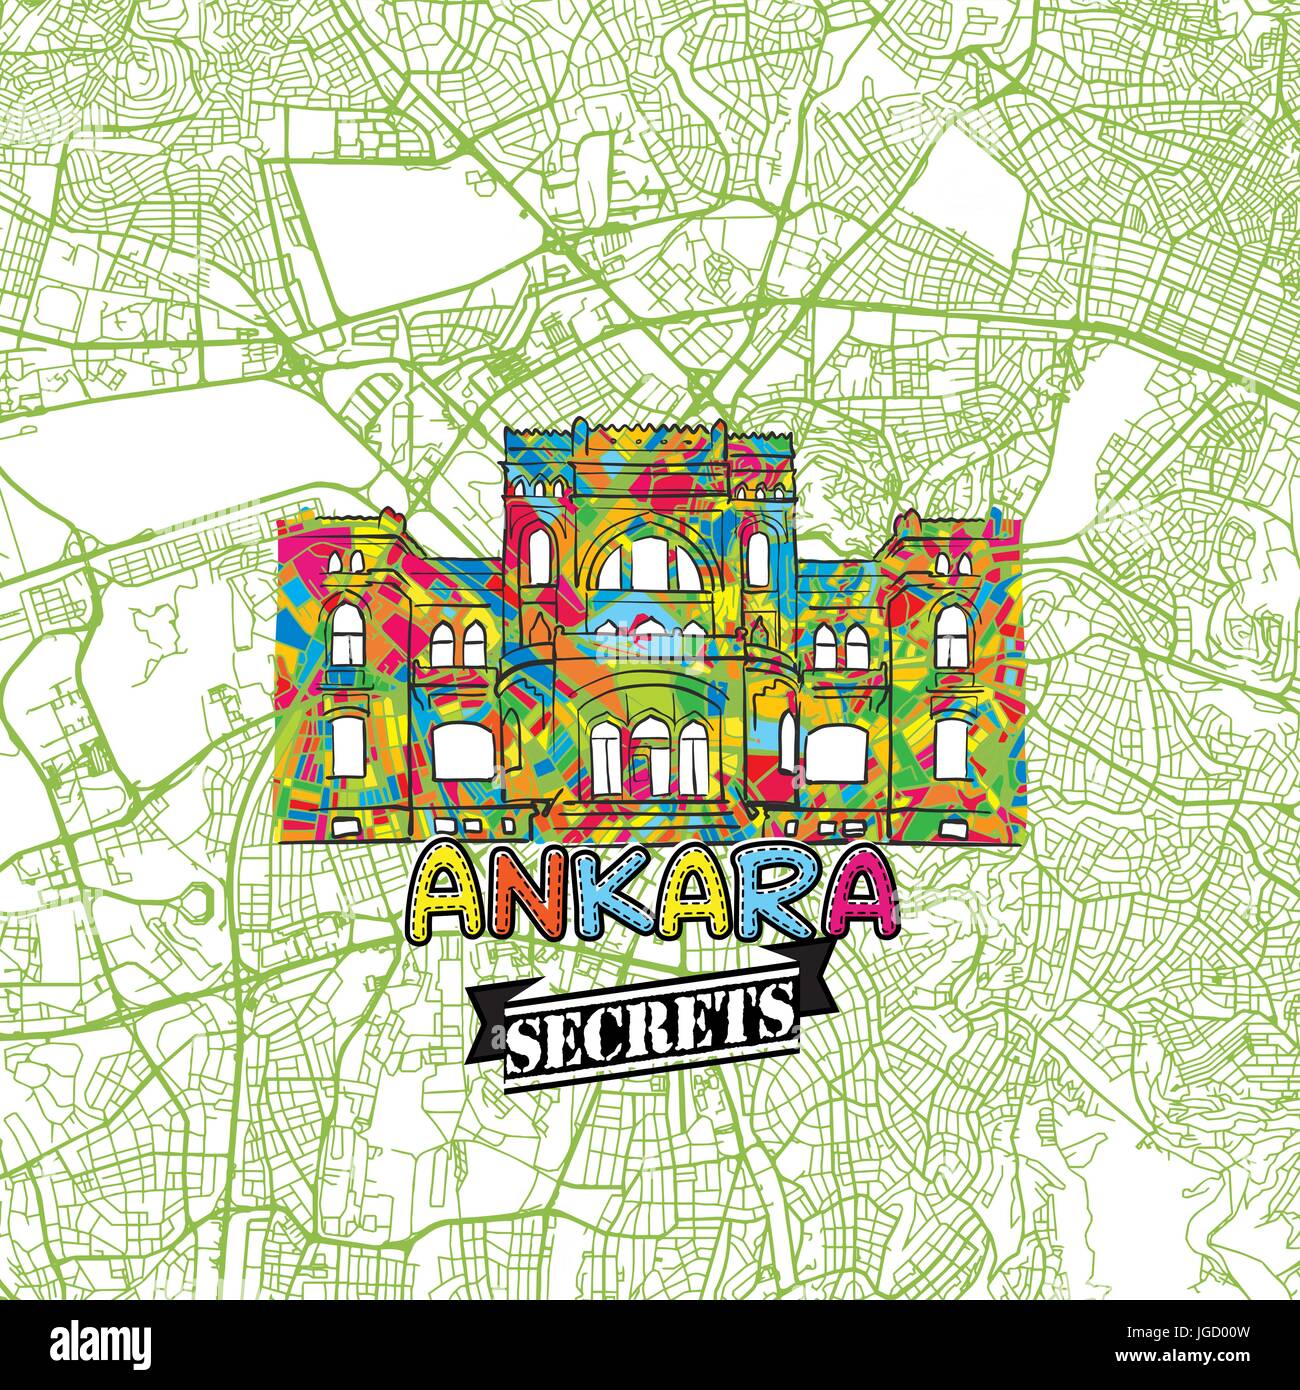 Ankara Reisen Geheimnisse Art Map für die Zuordnung von Experten und Reiseführer. Handgemachte Stadt Logo, Typo-Abzeichen und Hand gezeichnete Vektor-Bild an der Spitze sind gruppiert und Stock Vektor